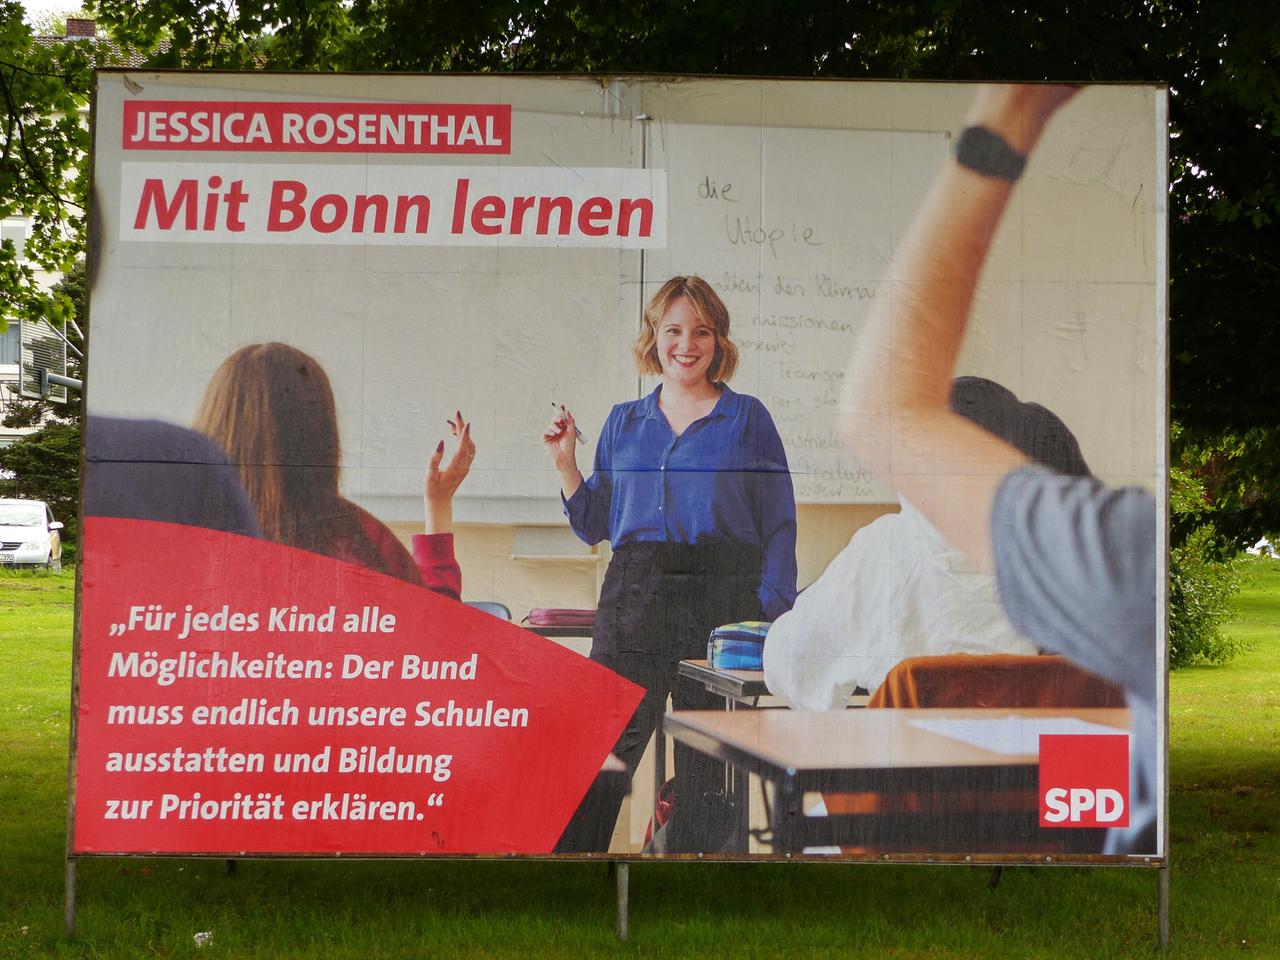 Wahlplakat von der Bundestagswahl für die SPD mit der Aufschrift "Jessica Rosenthal - Mit Bonn lernen". Zu sehen ist ein Frau in einem Klassenzimmer.